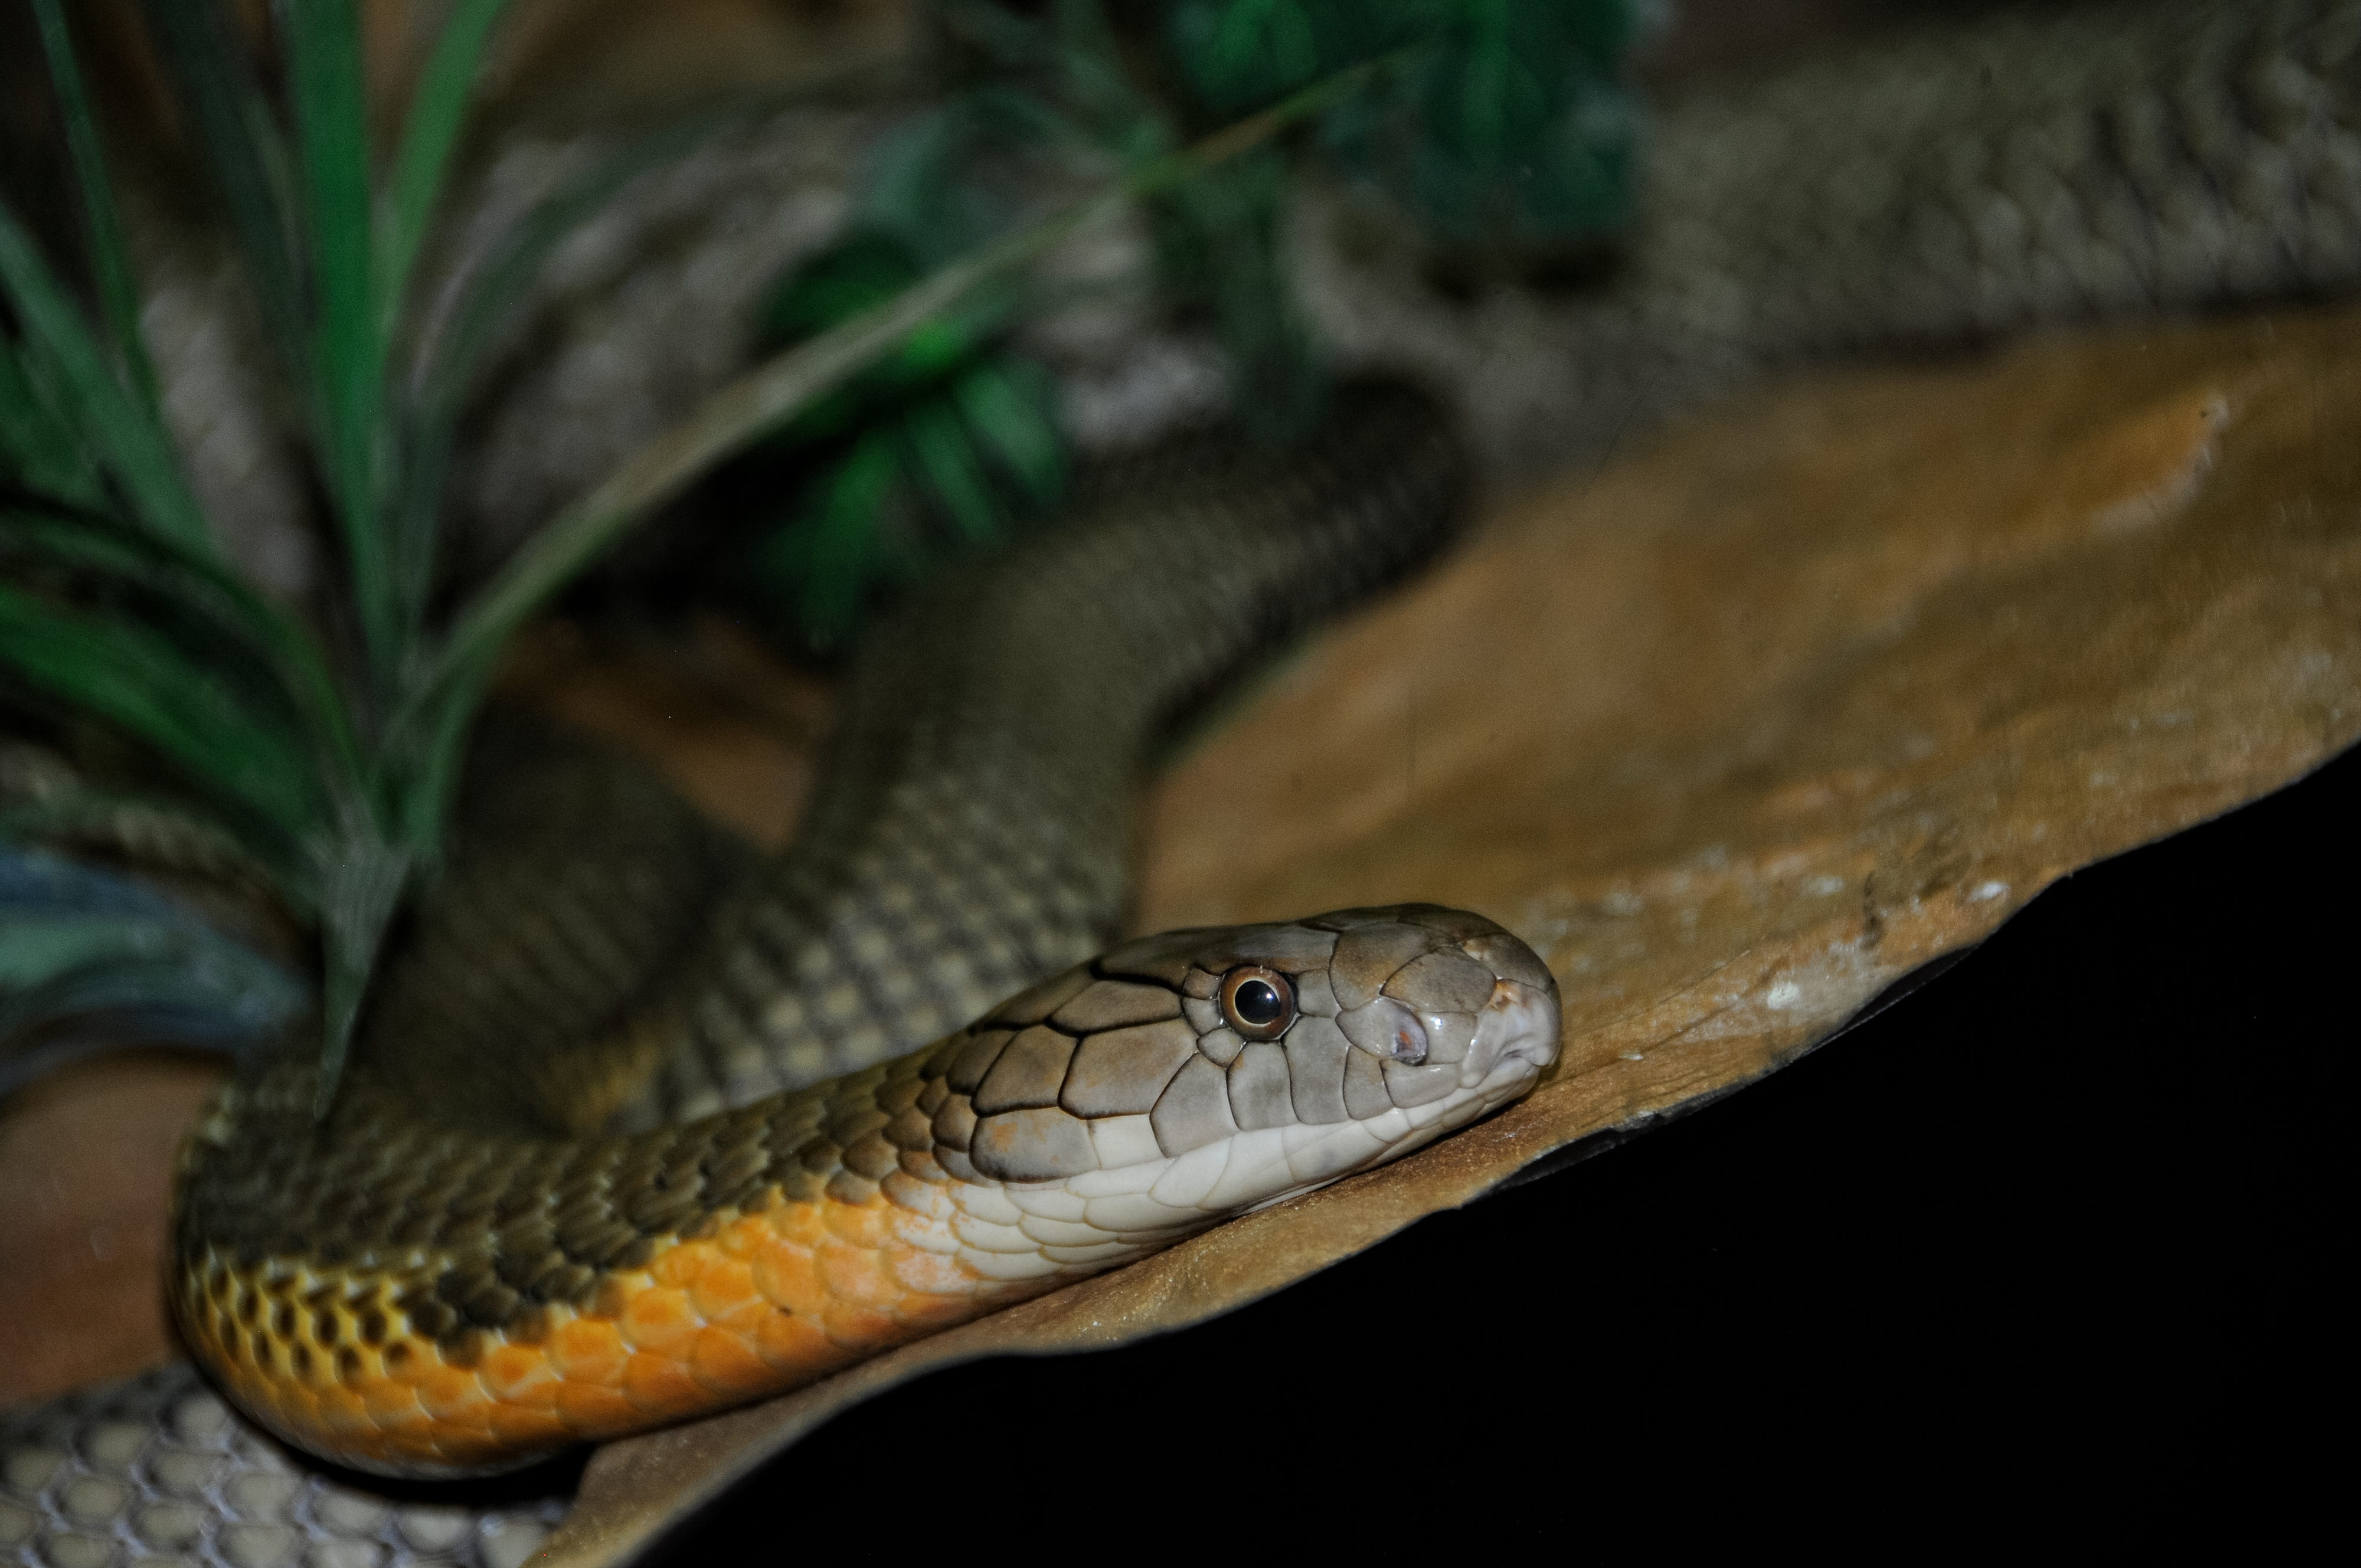 king-cobra-snake-farm-bangkok-photo-4738.jpg